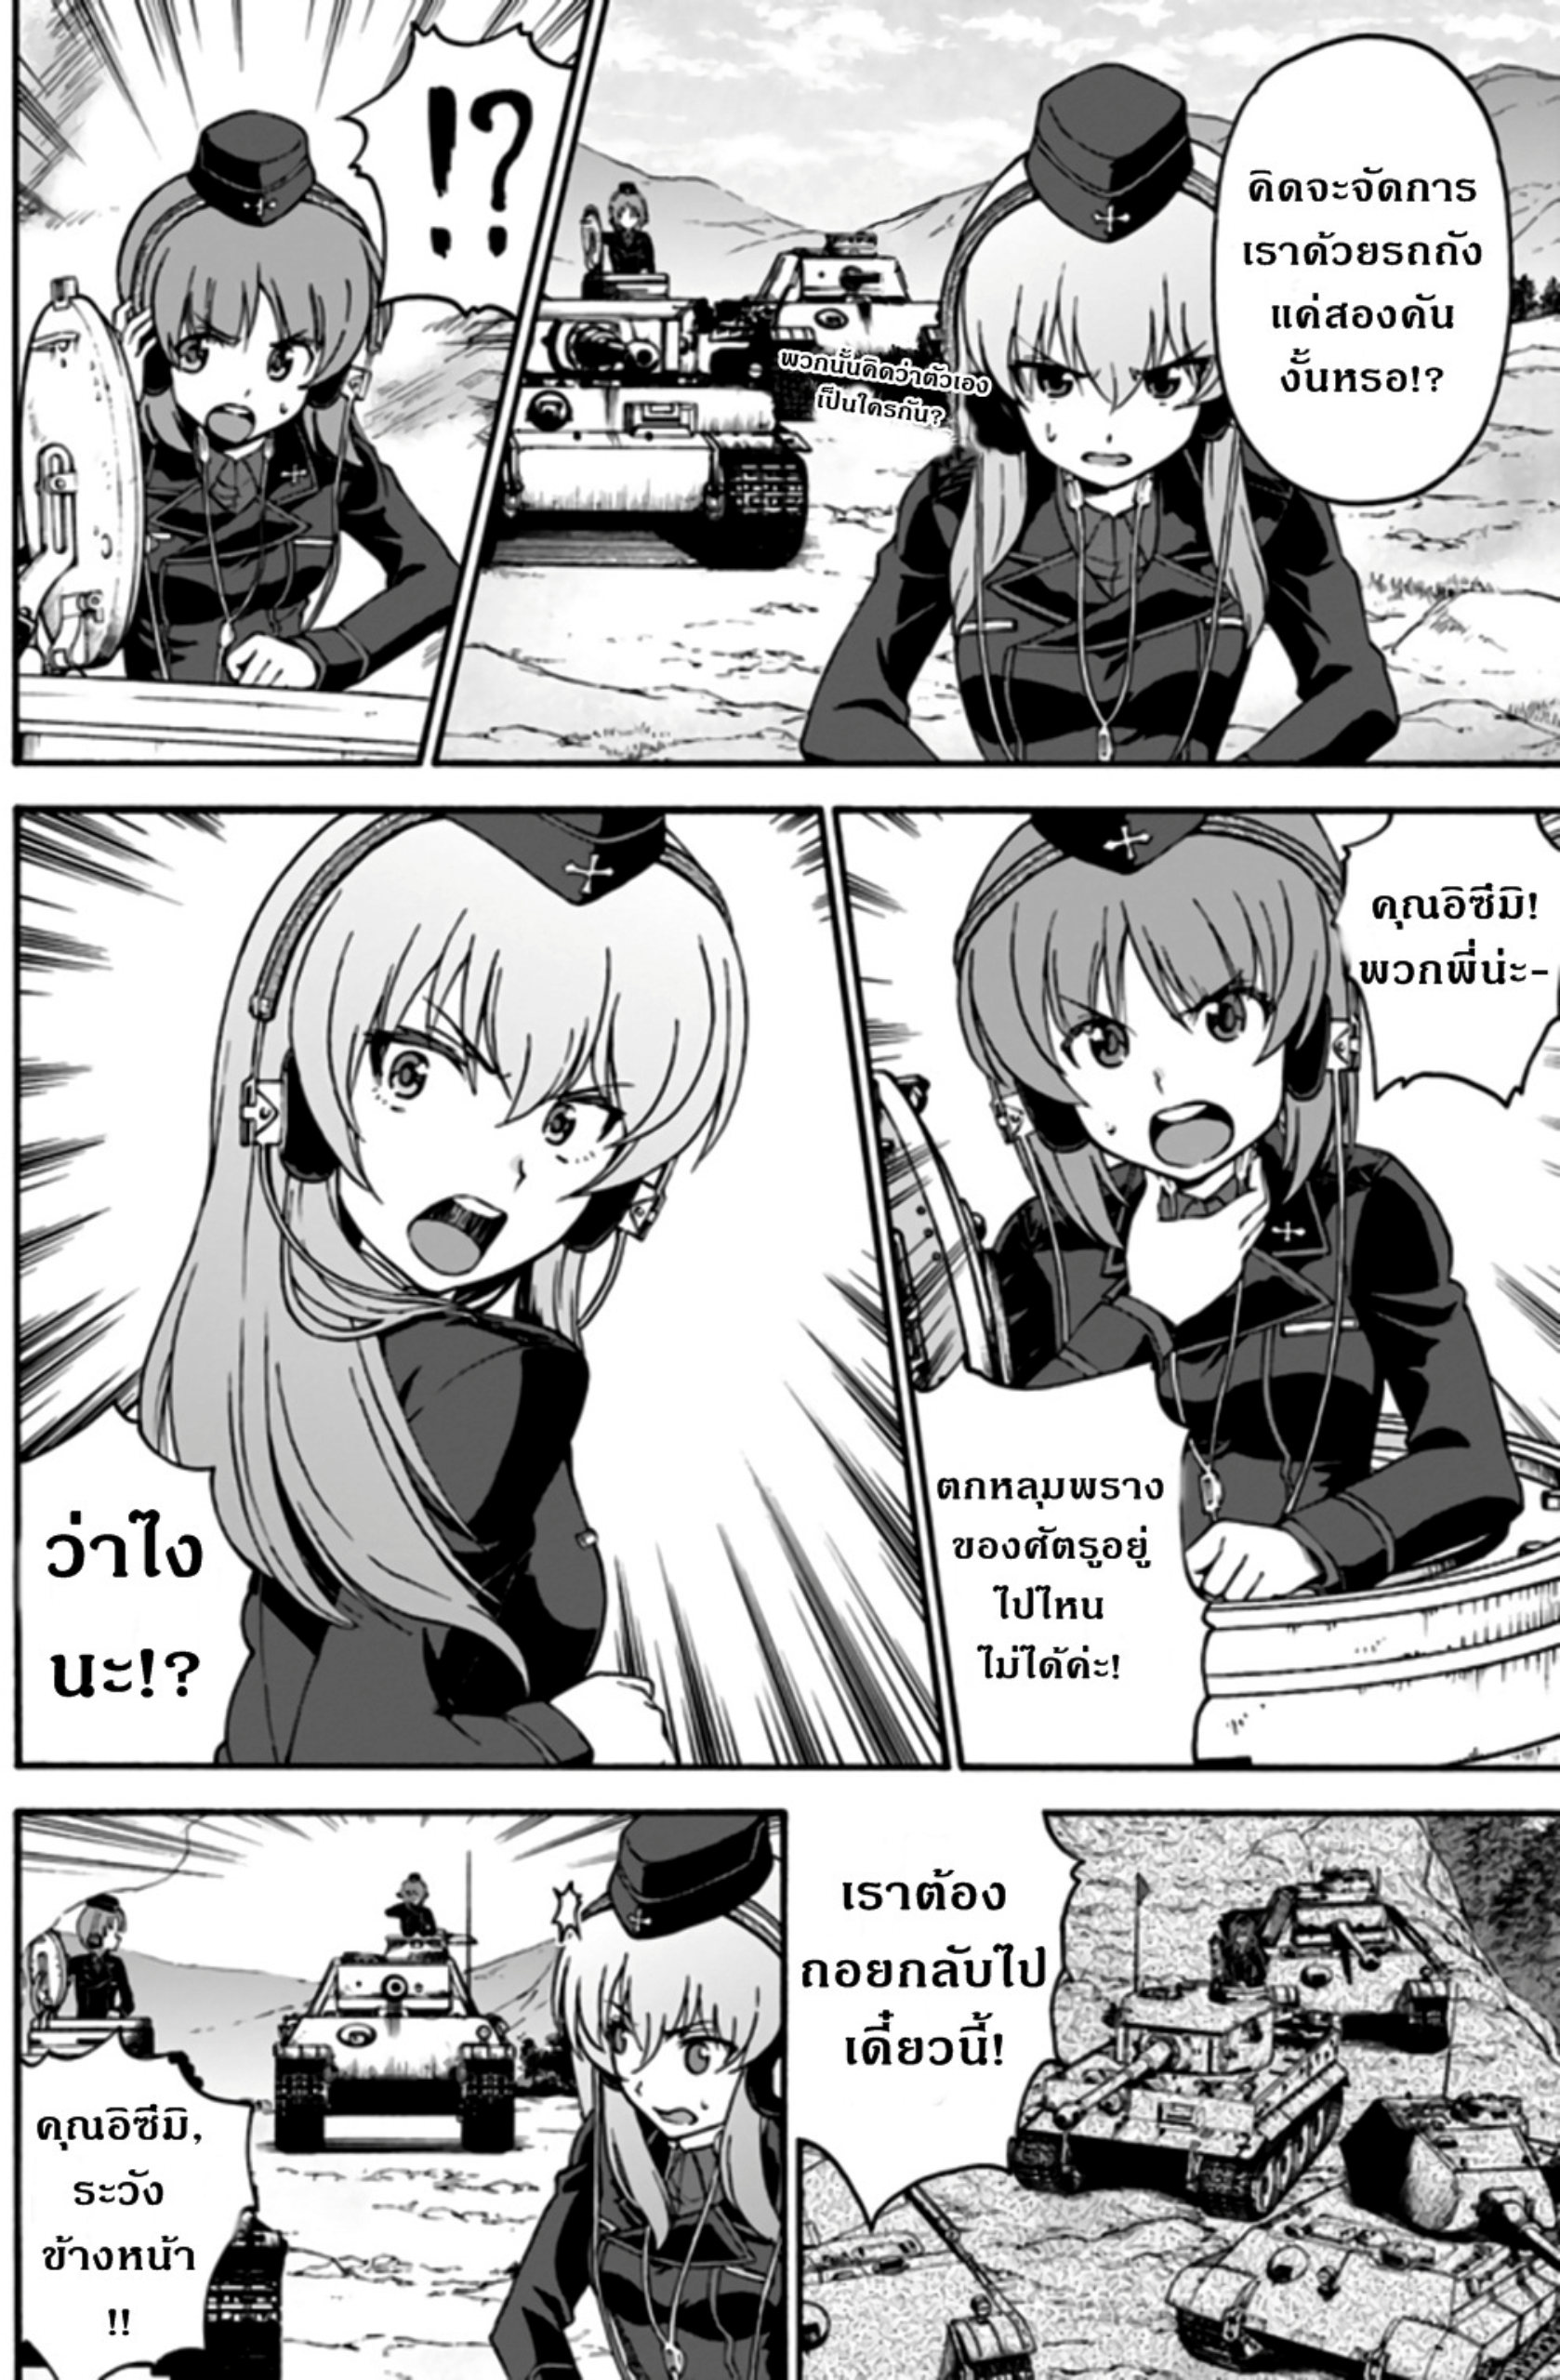 Girls & Panzer: Phase Erika